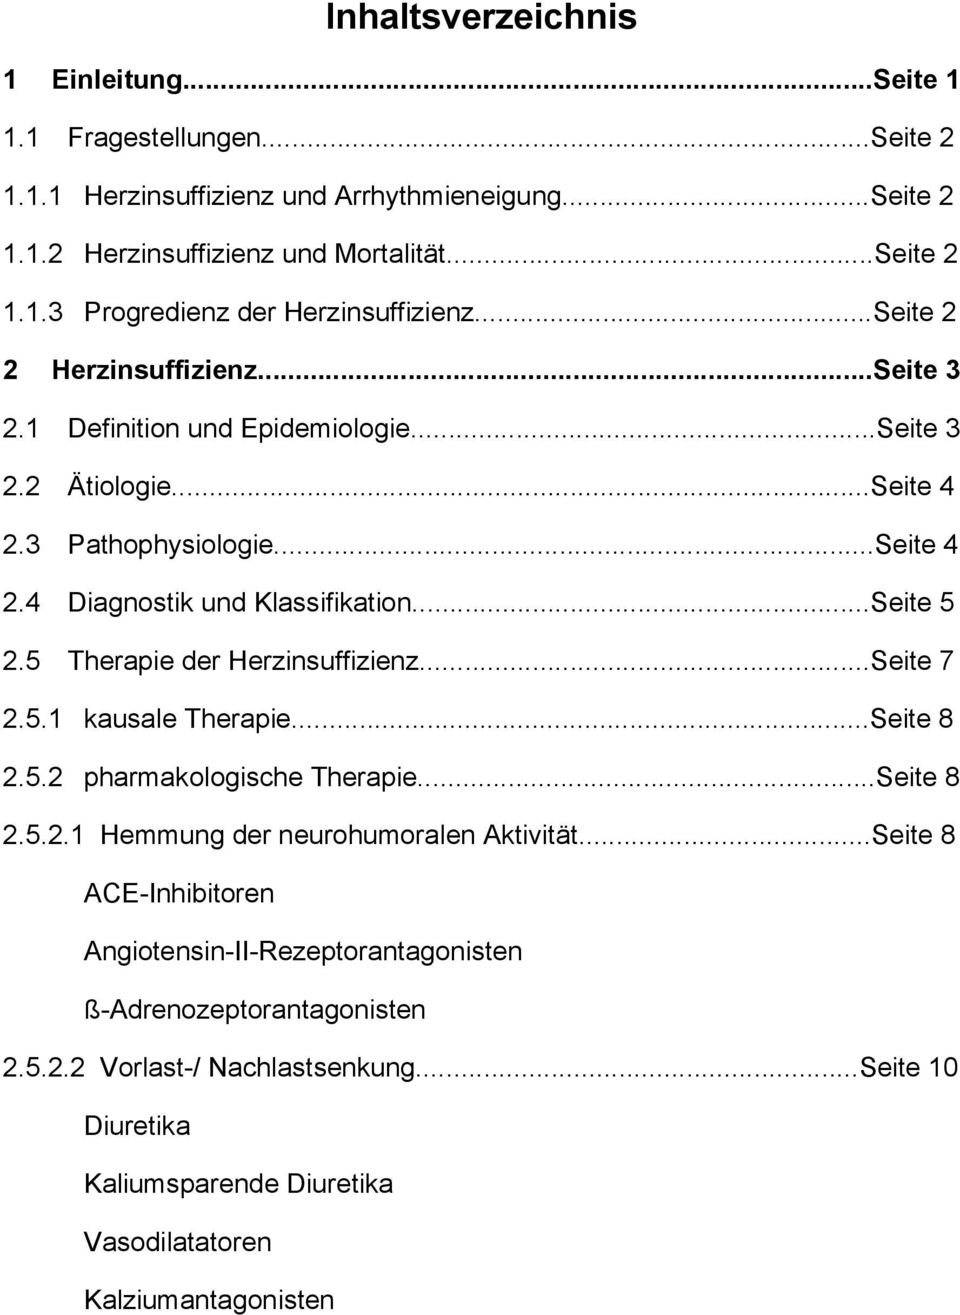 5 Therapie der Herzinsuffizienz...Seite 7 2.5.1 kausale Therapie...Seite 8 2.5.2 pharmakologische Therapie...Seite 8 2.5.2.1 Hemmung der neurohumoralen Aktivität.